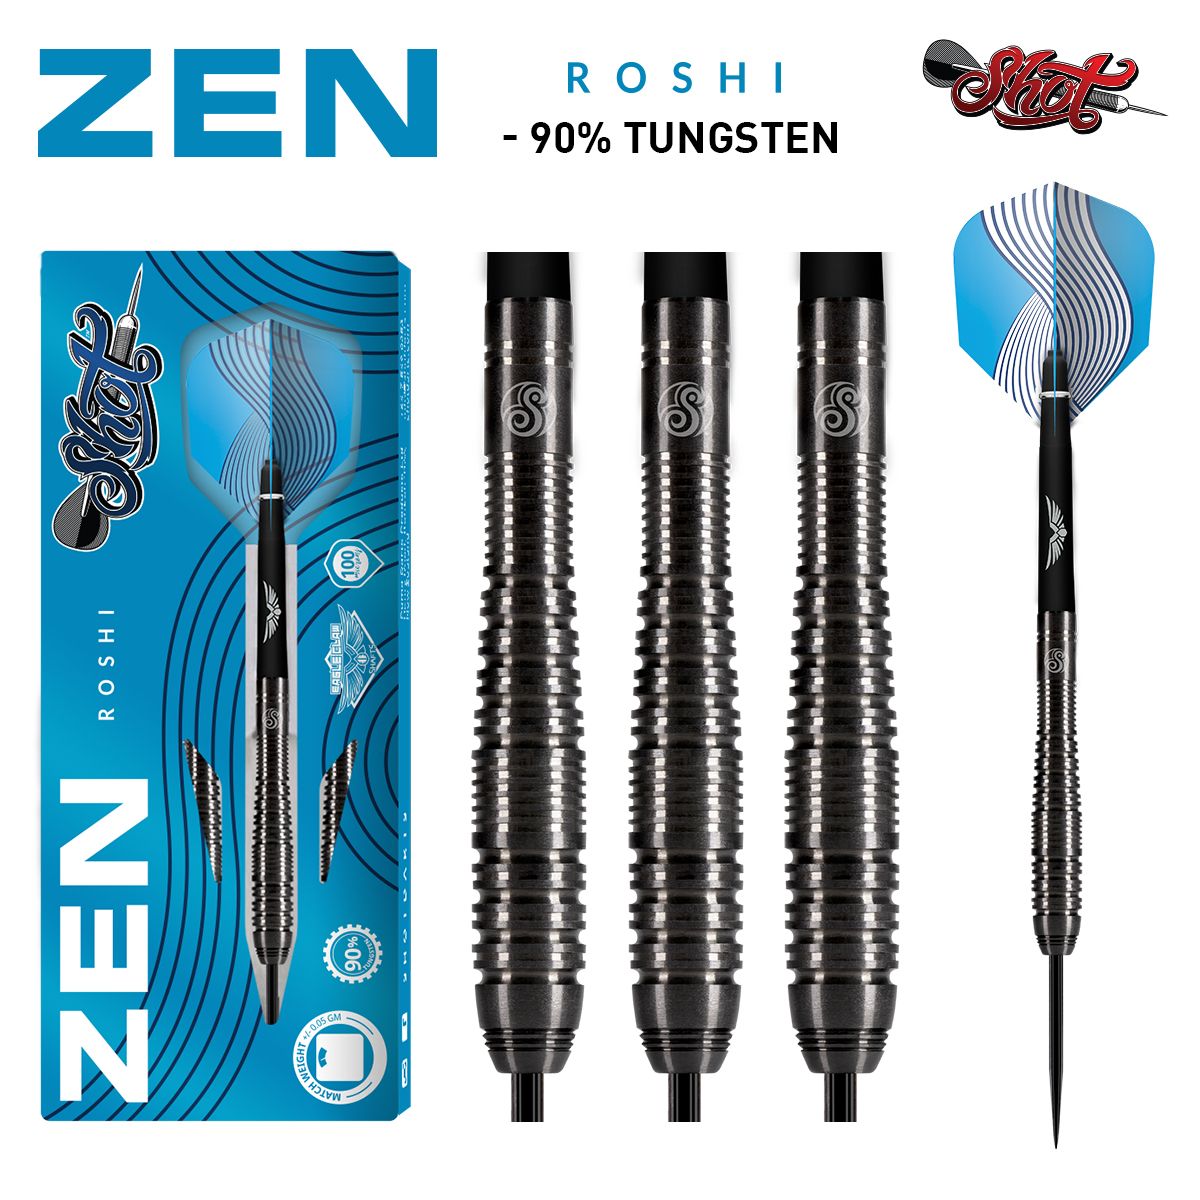 Zen Roshi Steeldart Set-90% Tungsten 24g von Shot